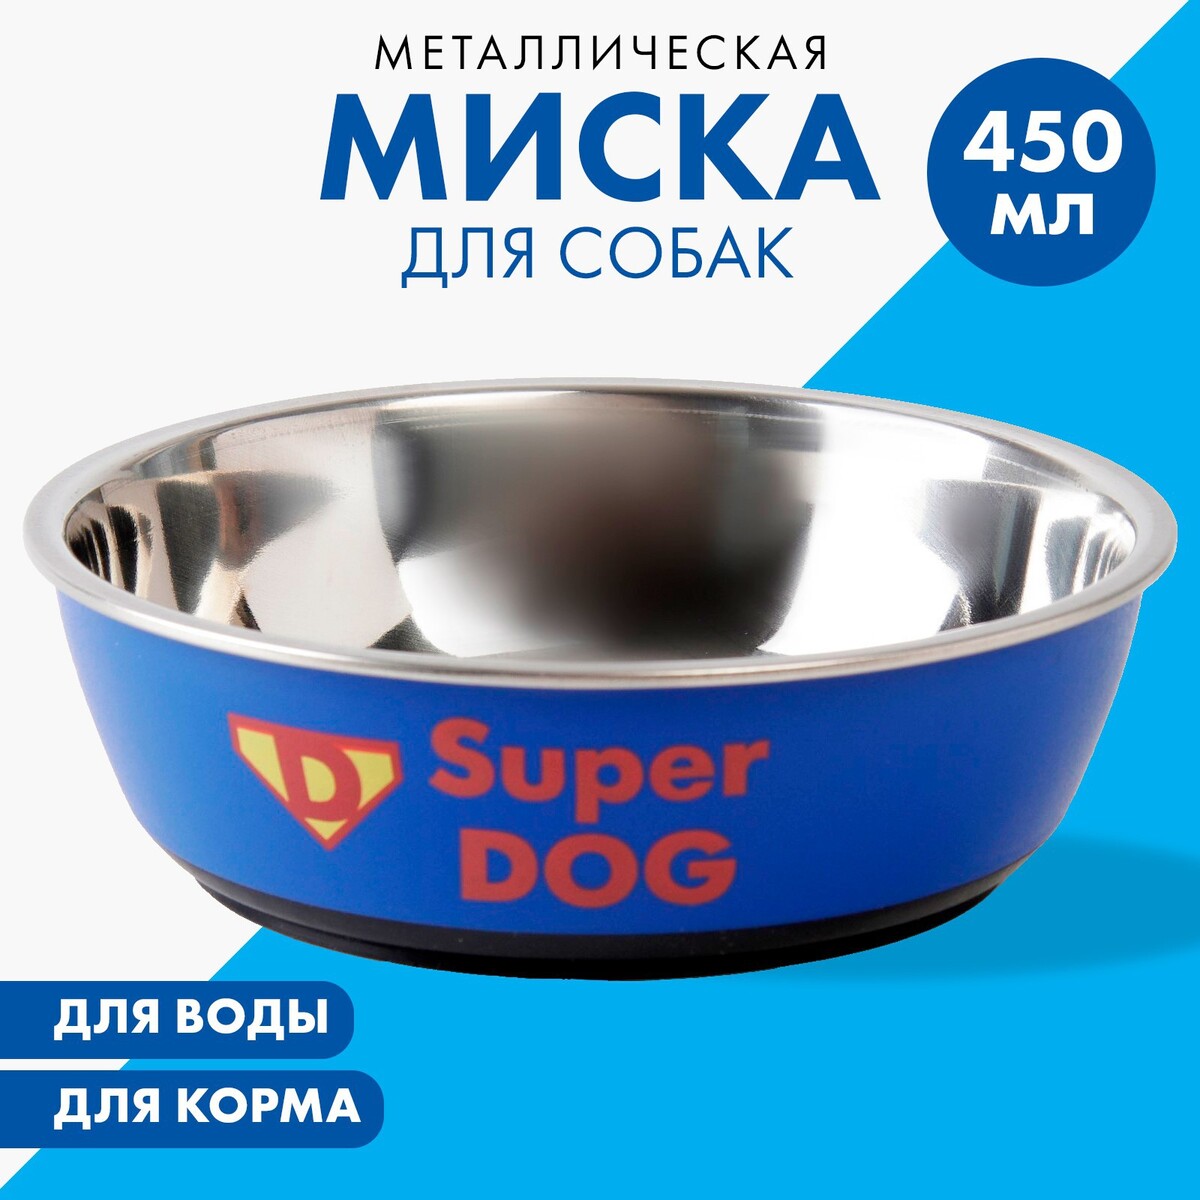 Миска металлическая для собаки super dog, 450 мл, 14х4.5 см миска металлическая для собаки super dog 450 мл 14х4 5 см